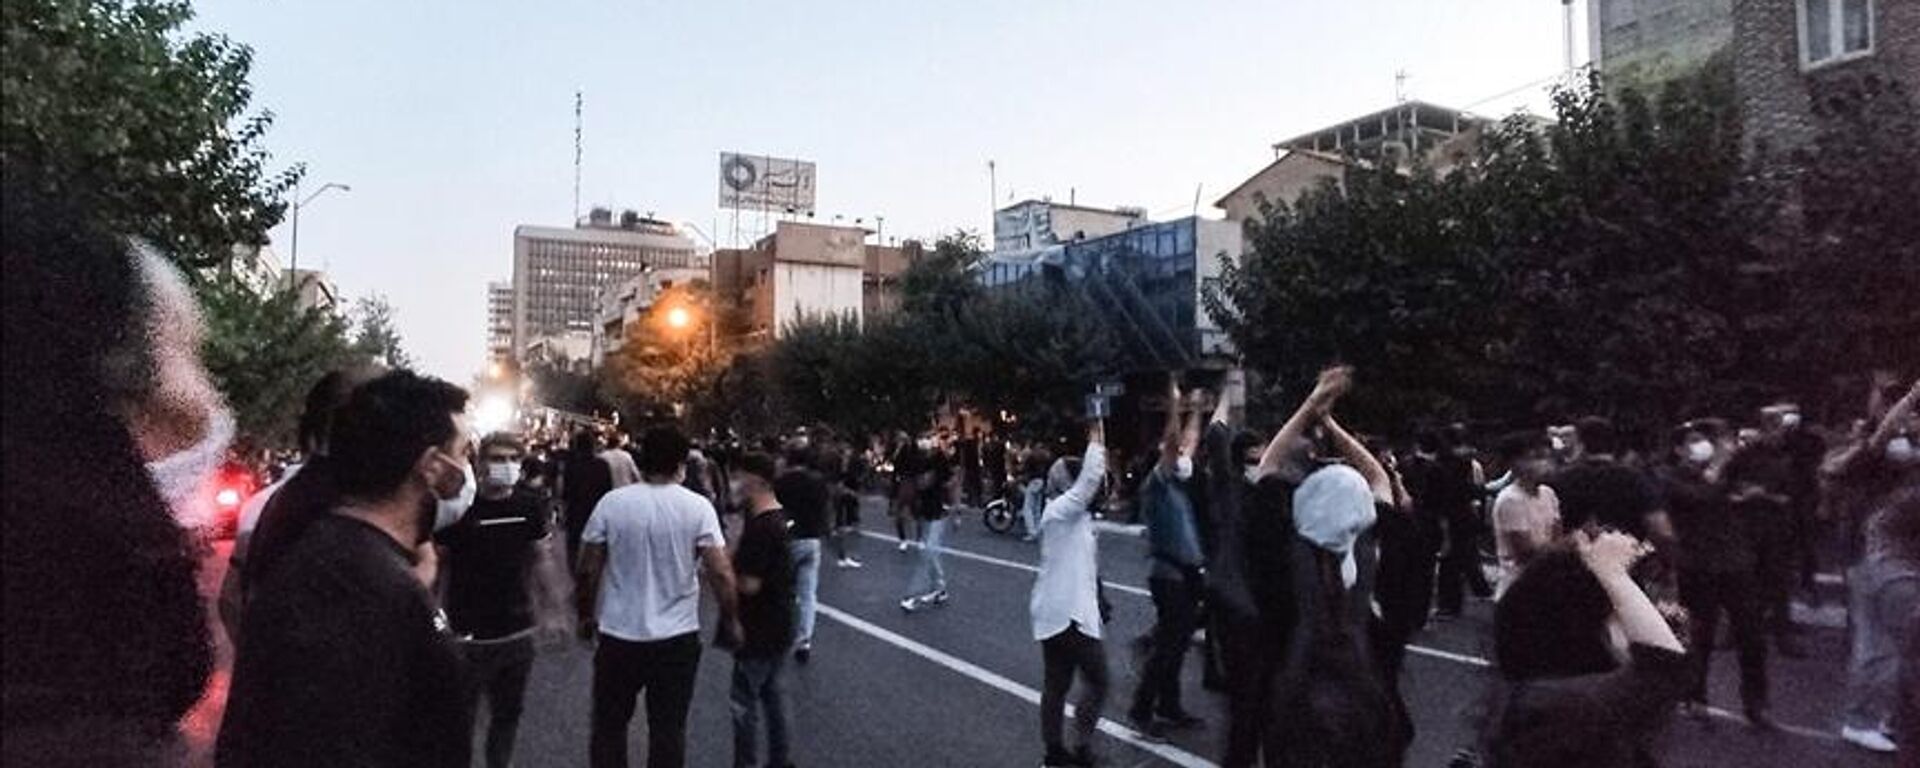 İran'da, Mahsa Emini'nin ölümünün ardından başlayan gösteriler 19. gününü geride bırakırken, ülkede protesto düzenleyen lise öğrencileri dikkati çekiyor. - Sputnik Türkiye, 1920, 29.10.2022